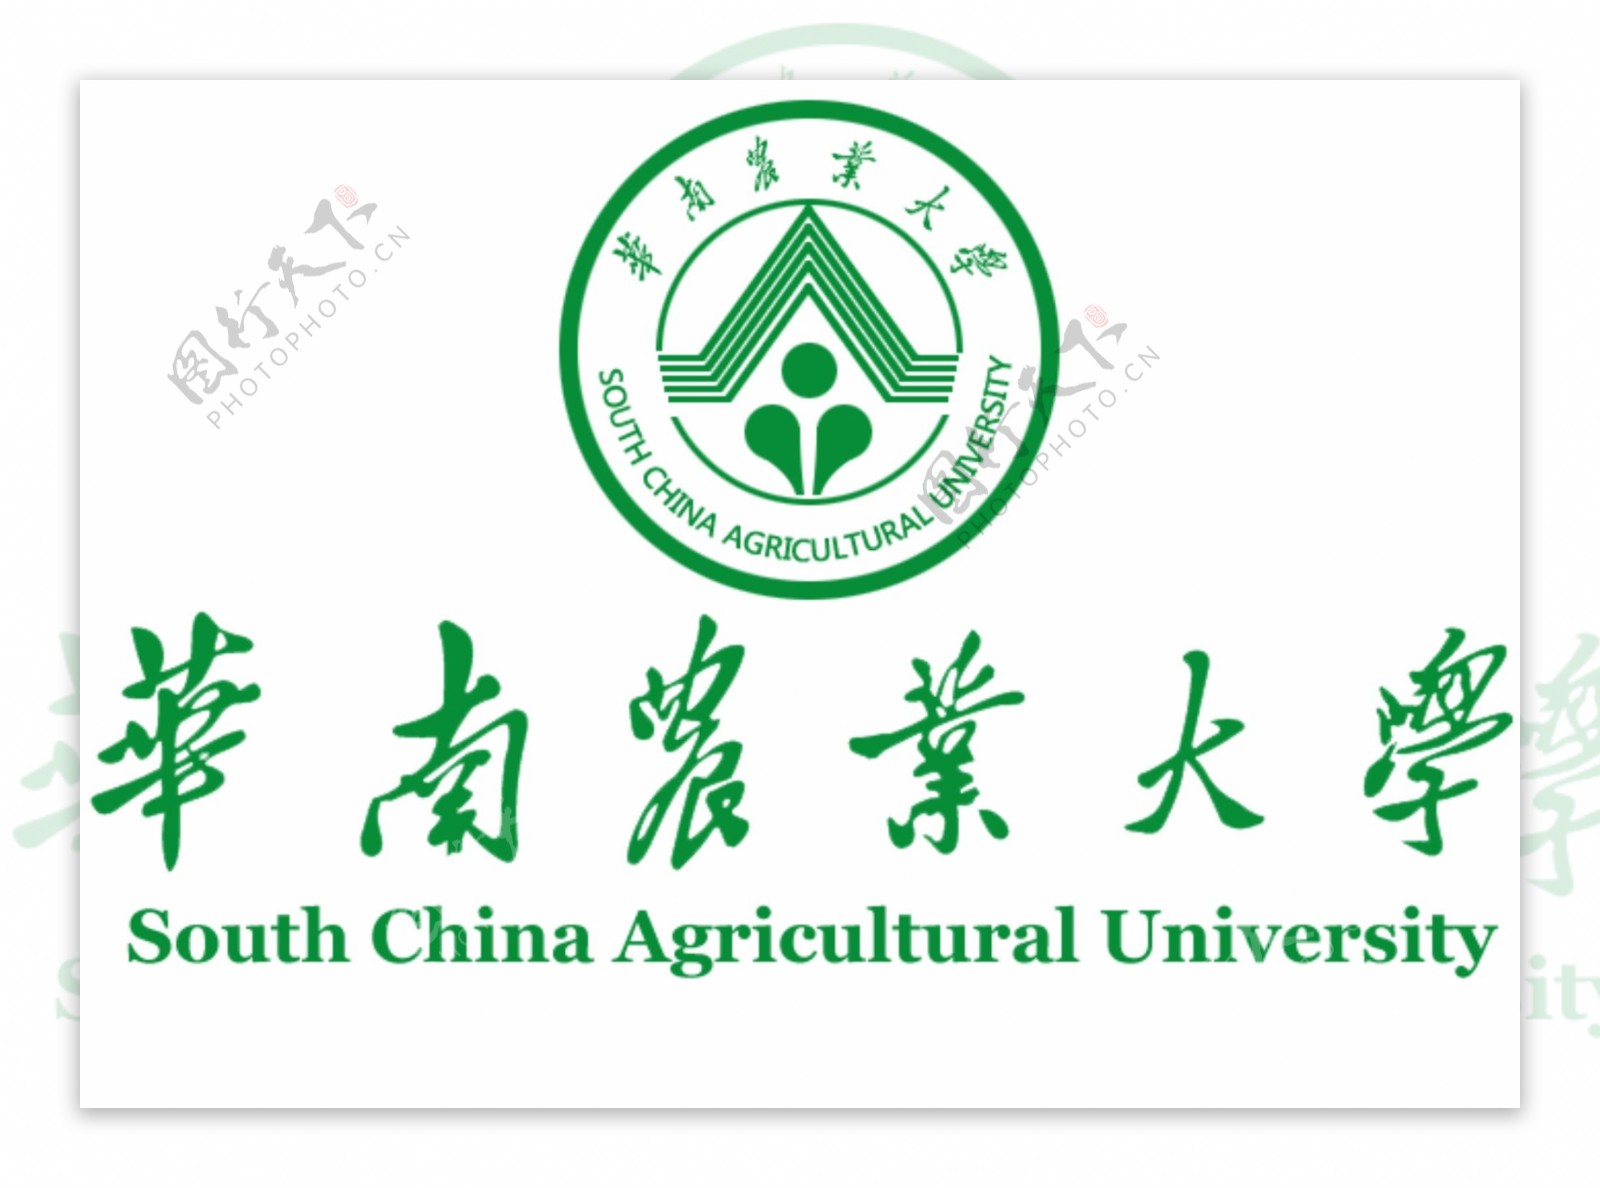 华南农业大学logo图片